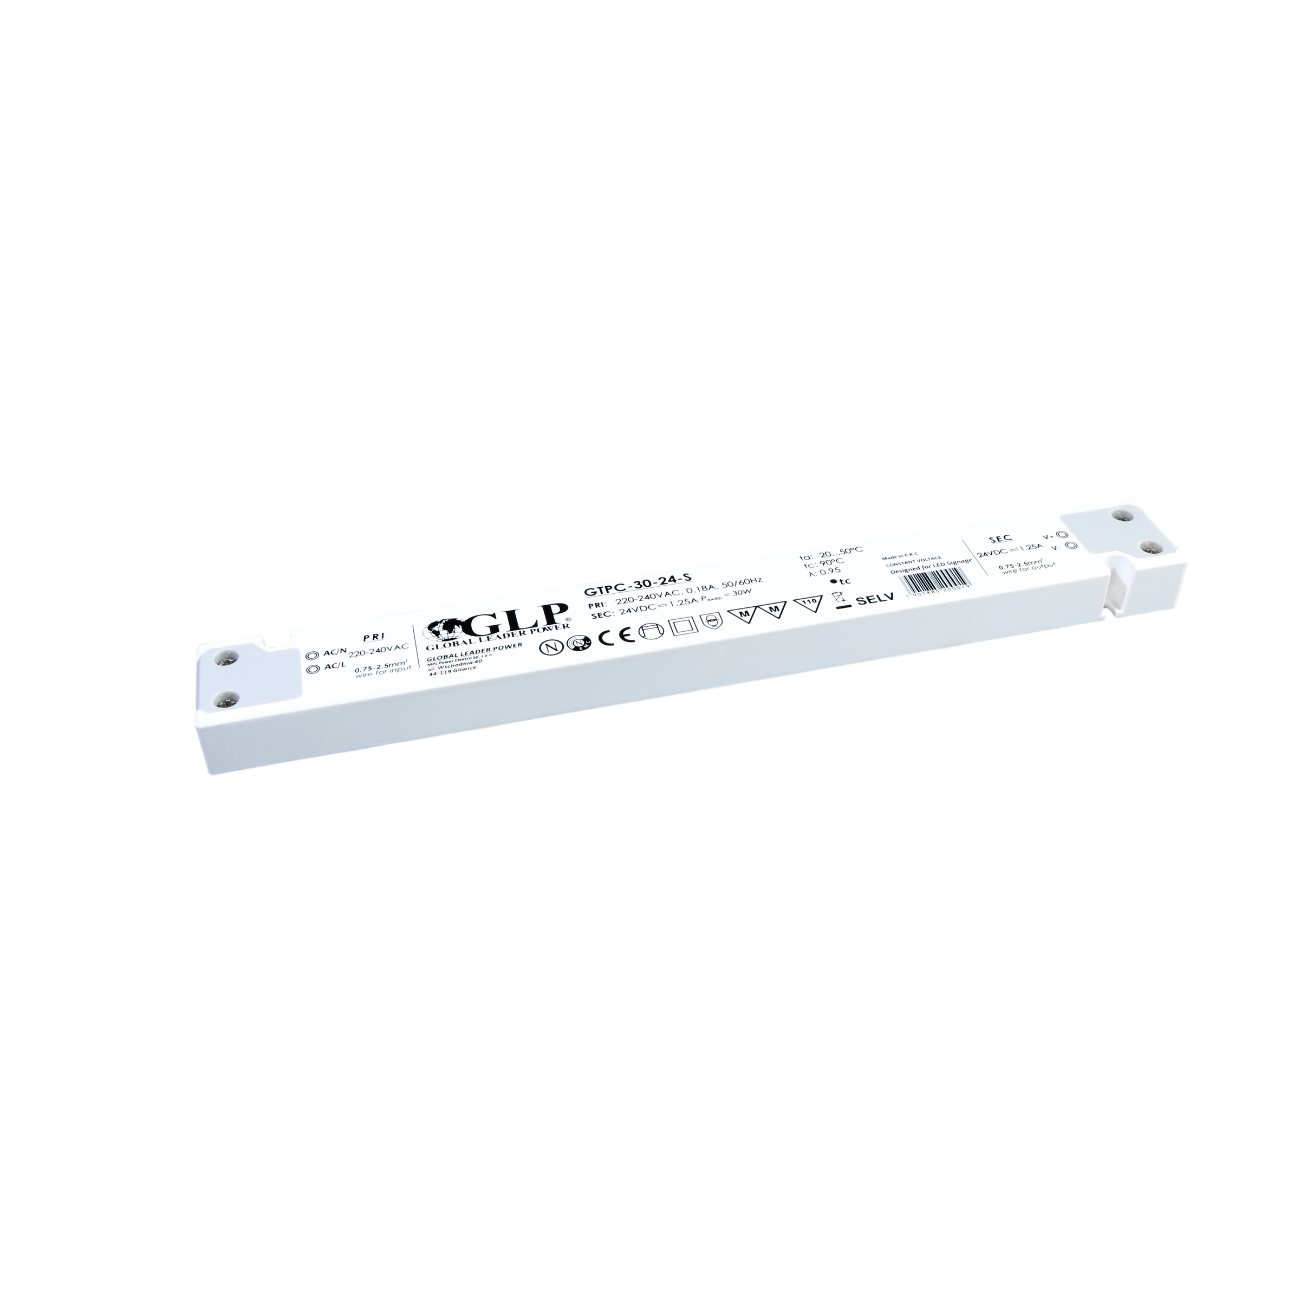 GTPC-30-24-S (30W/24V) LED-Netzteil (slim)